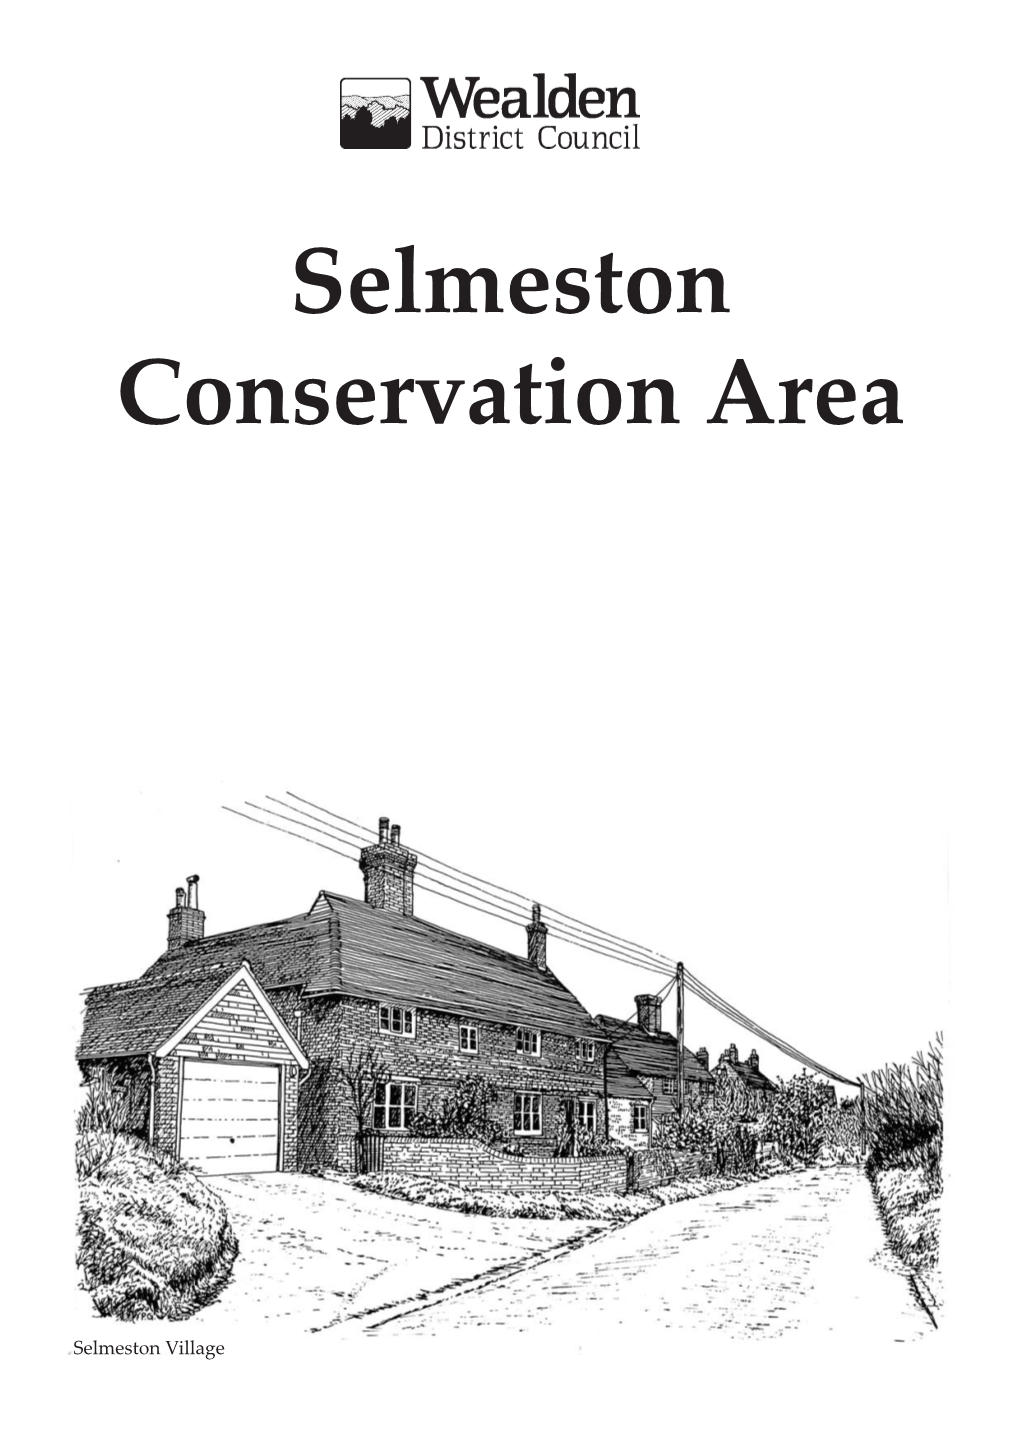 Selmeston Conservation Area